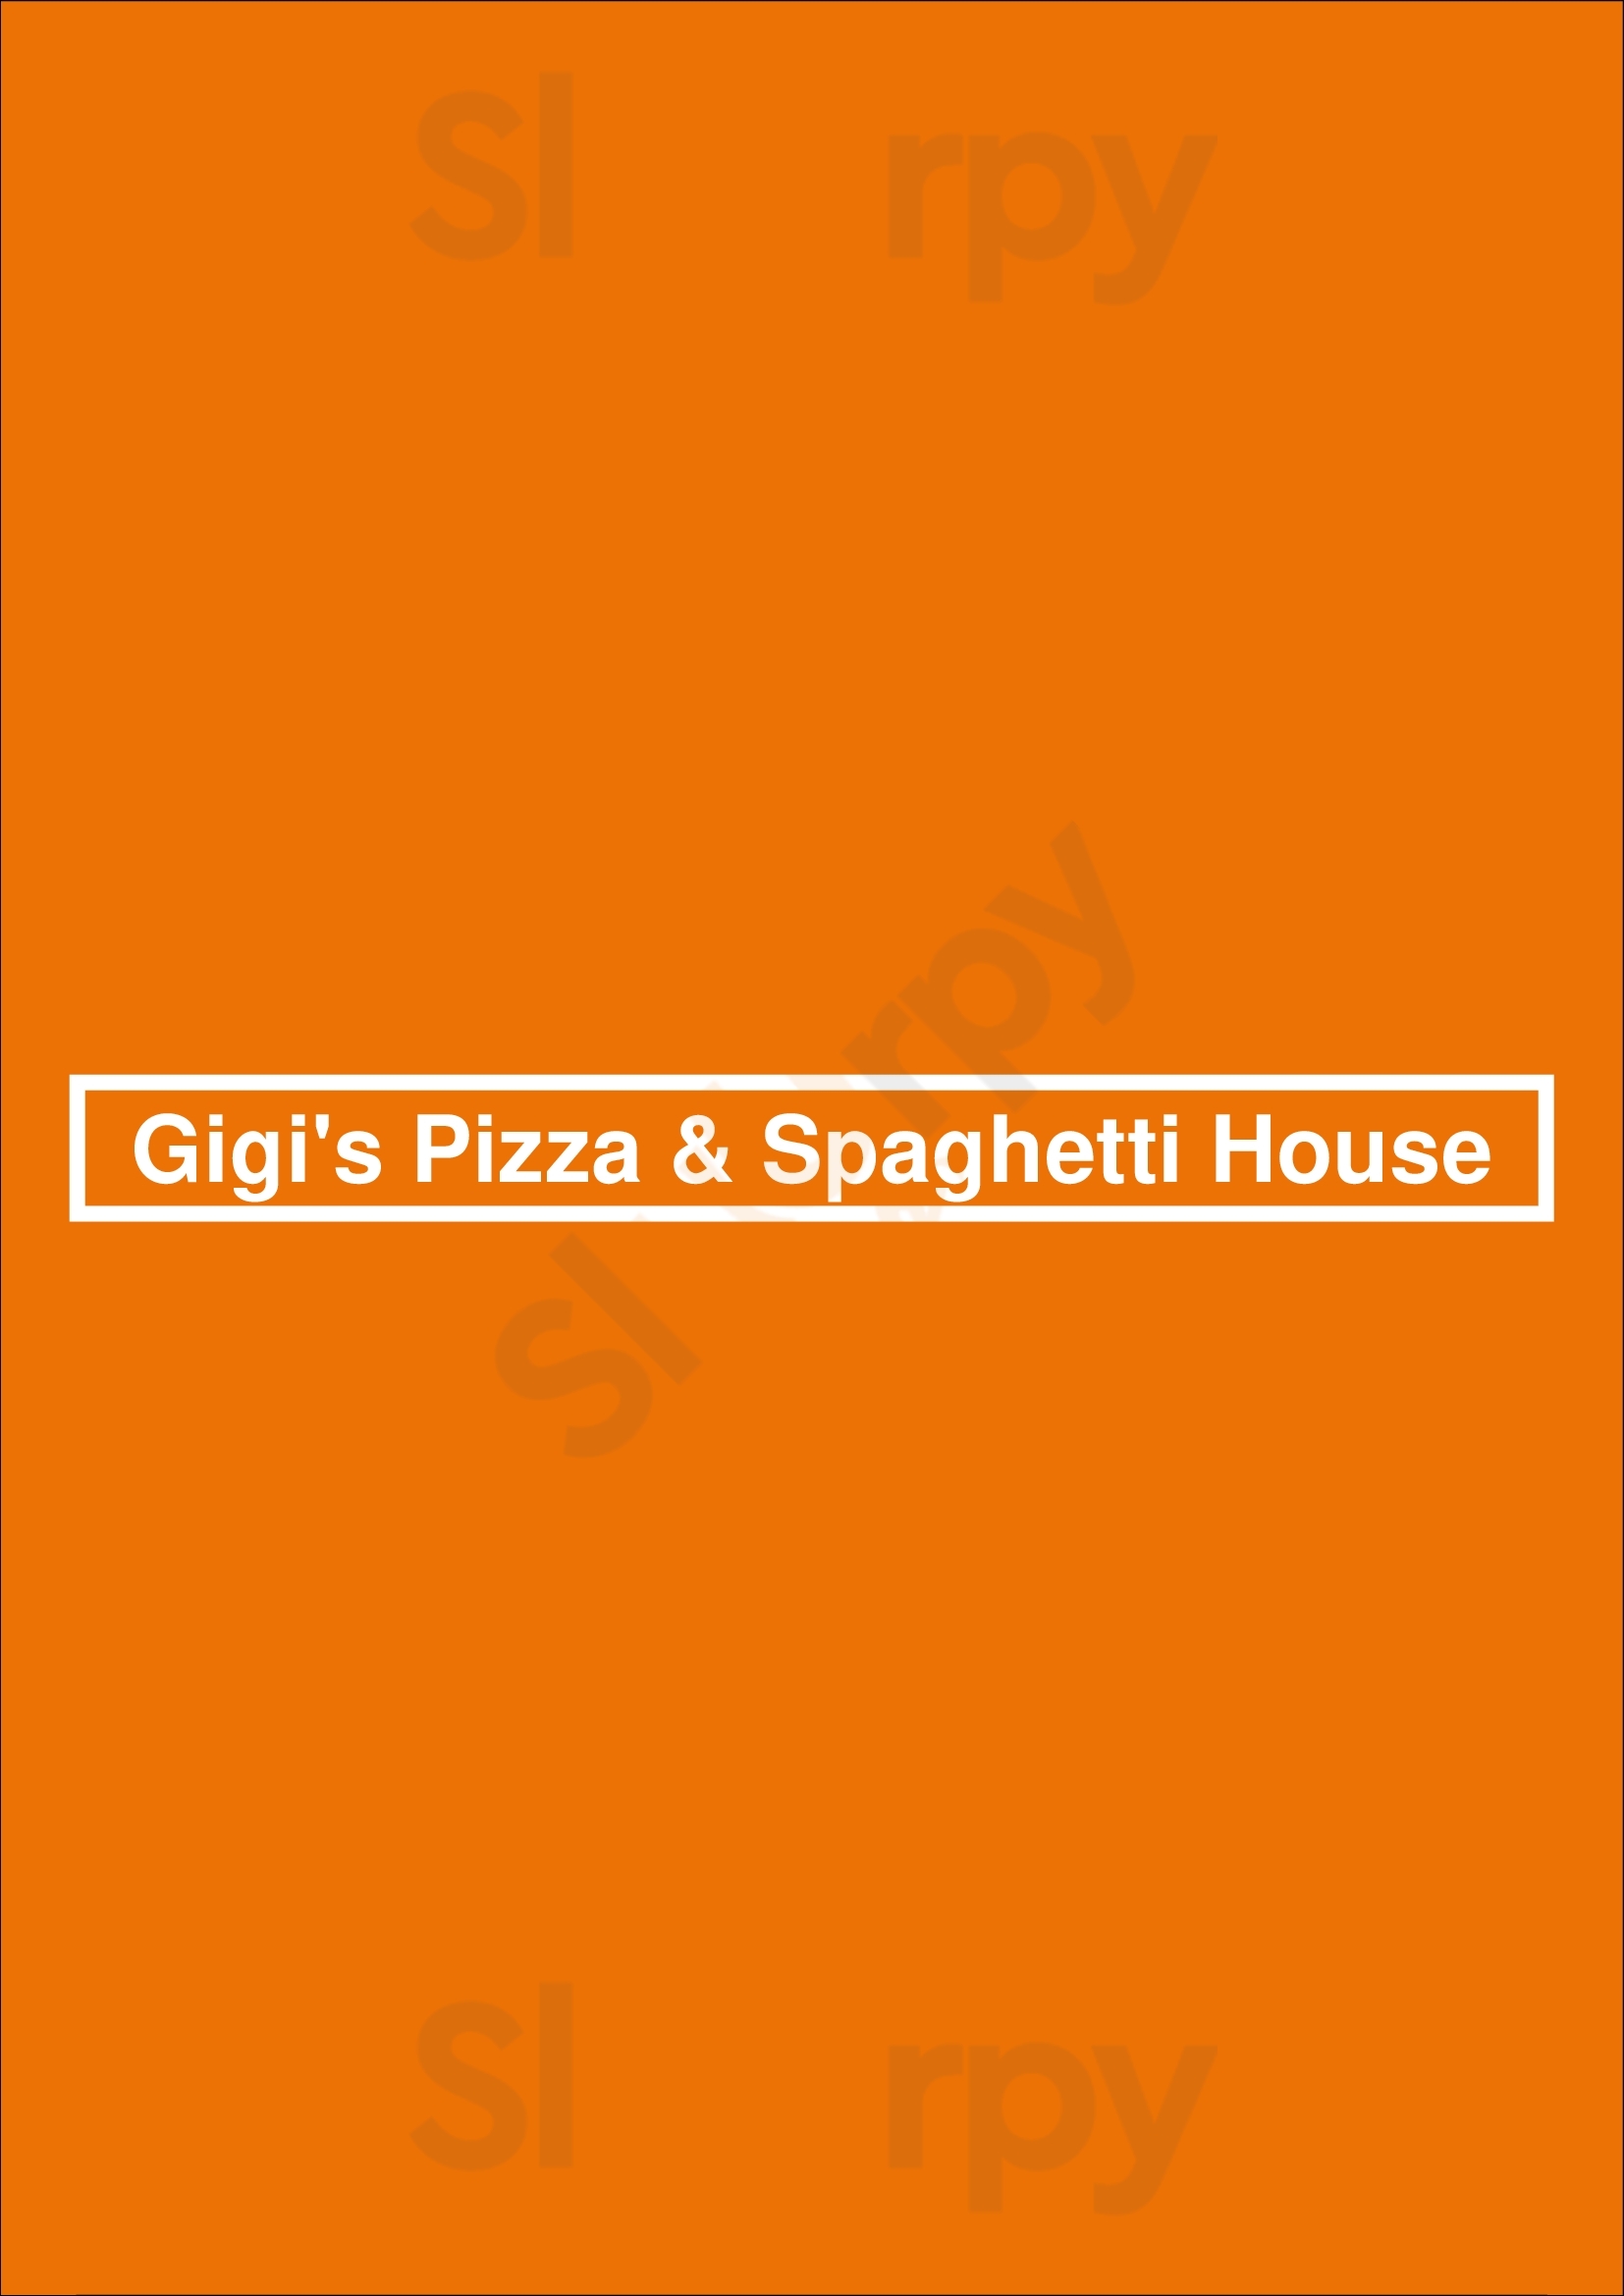 Gigi's Pizza & Spaghetti House Vancouver Menu - 1